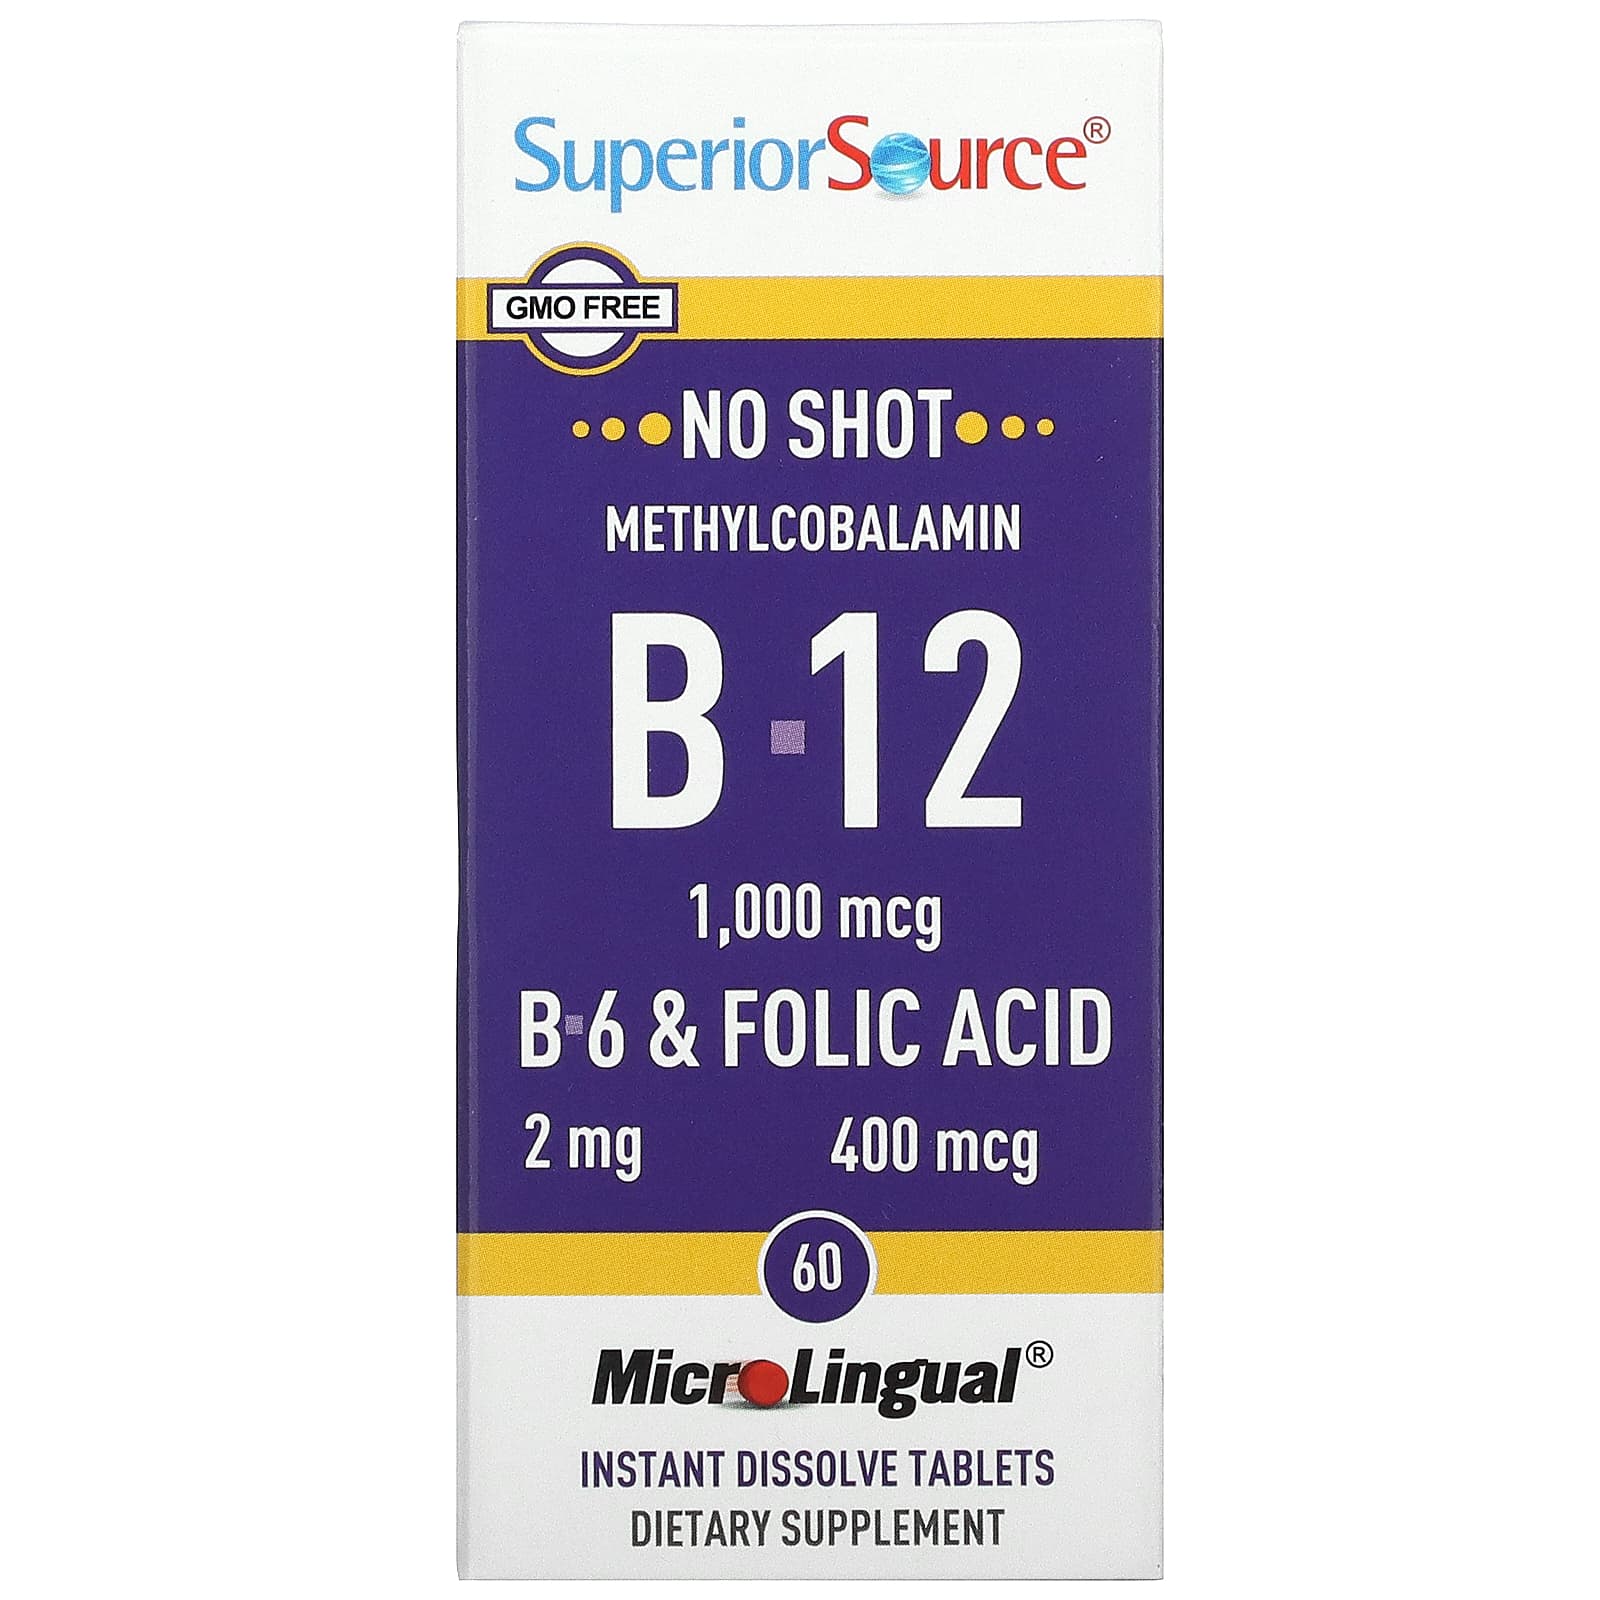 Superior Source No Shot Метилкобаламин В12 (1000 мкг) + В6 и фолиевая кислота (400 мкг) 60 таблеток superior source метилкобаламин b 12 1000 мкг b 6 и фолиевая кислота 800 мкг microlingual 60 таблеток